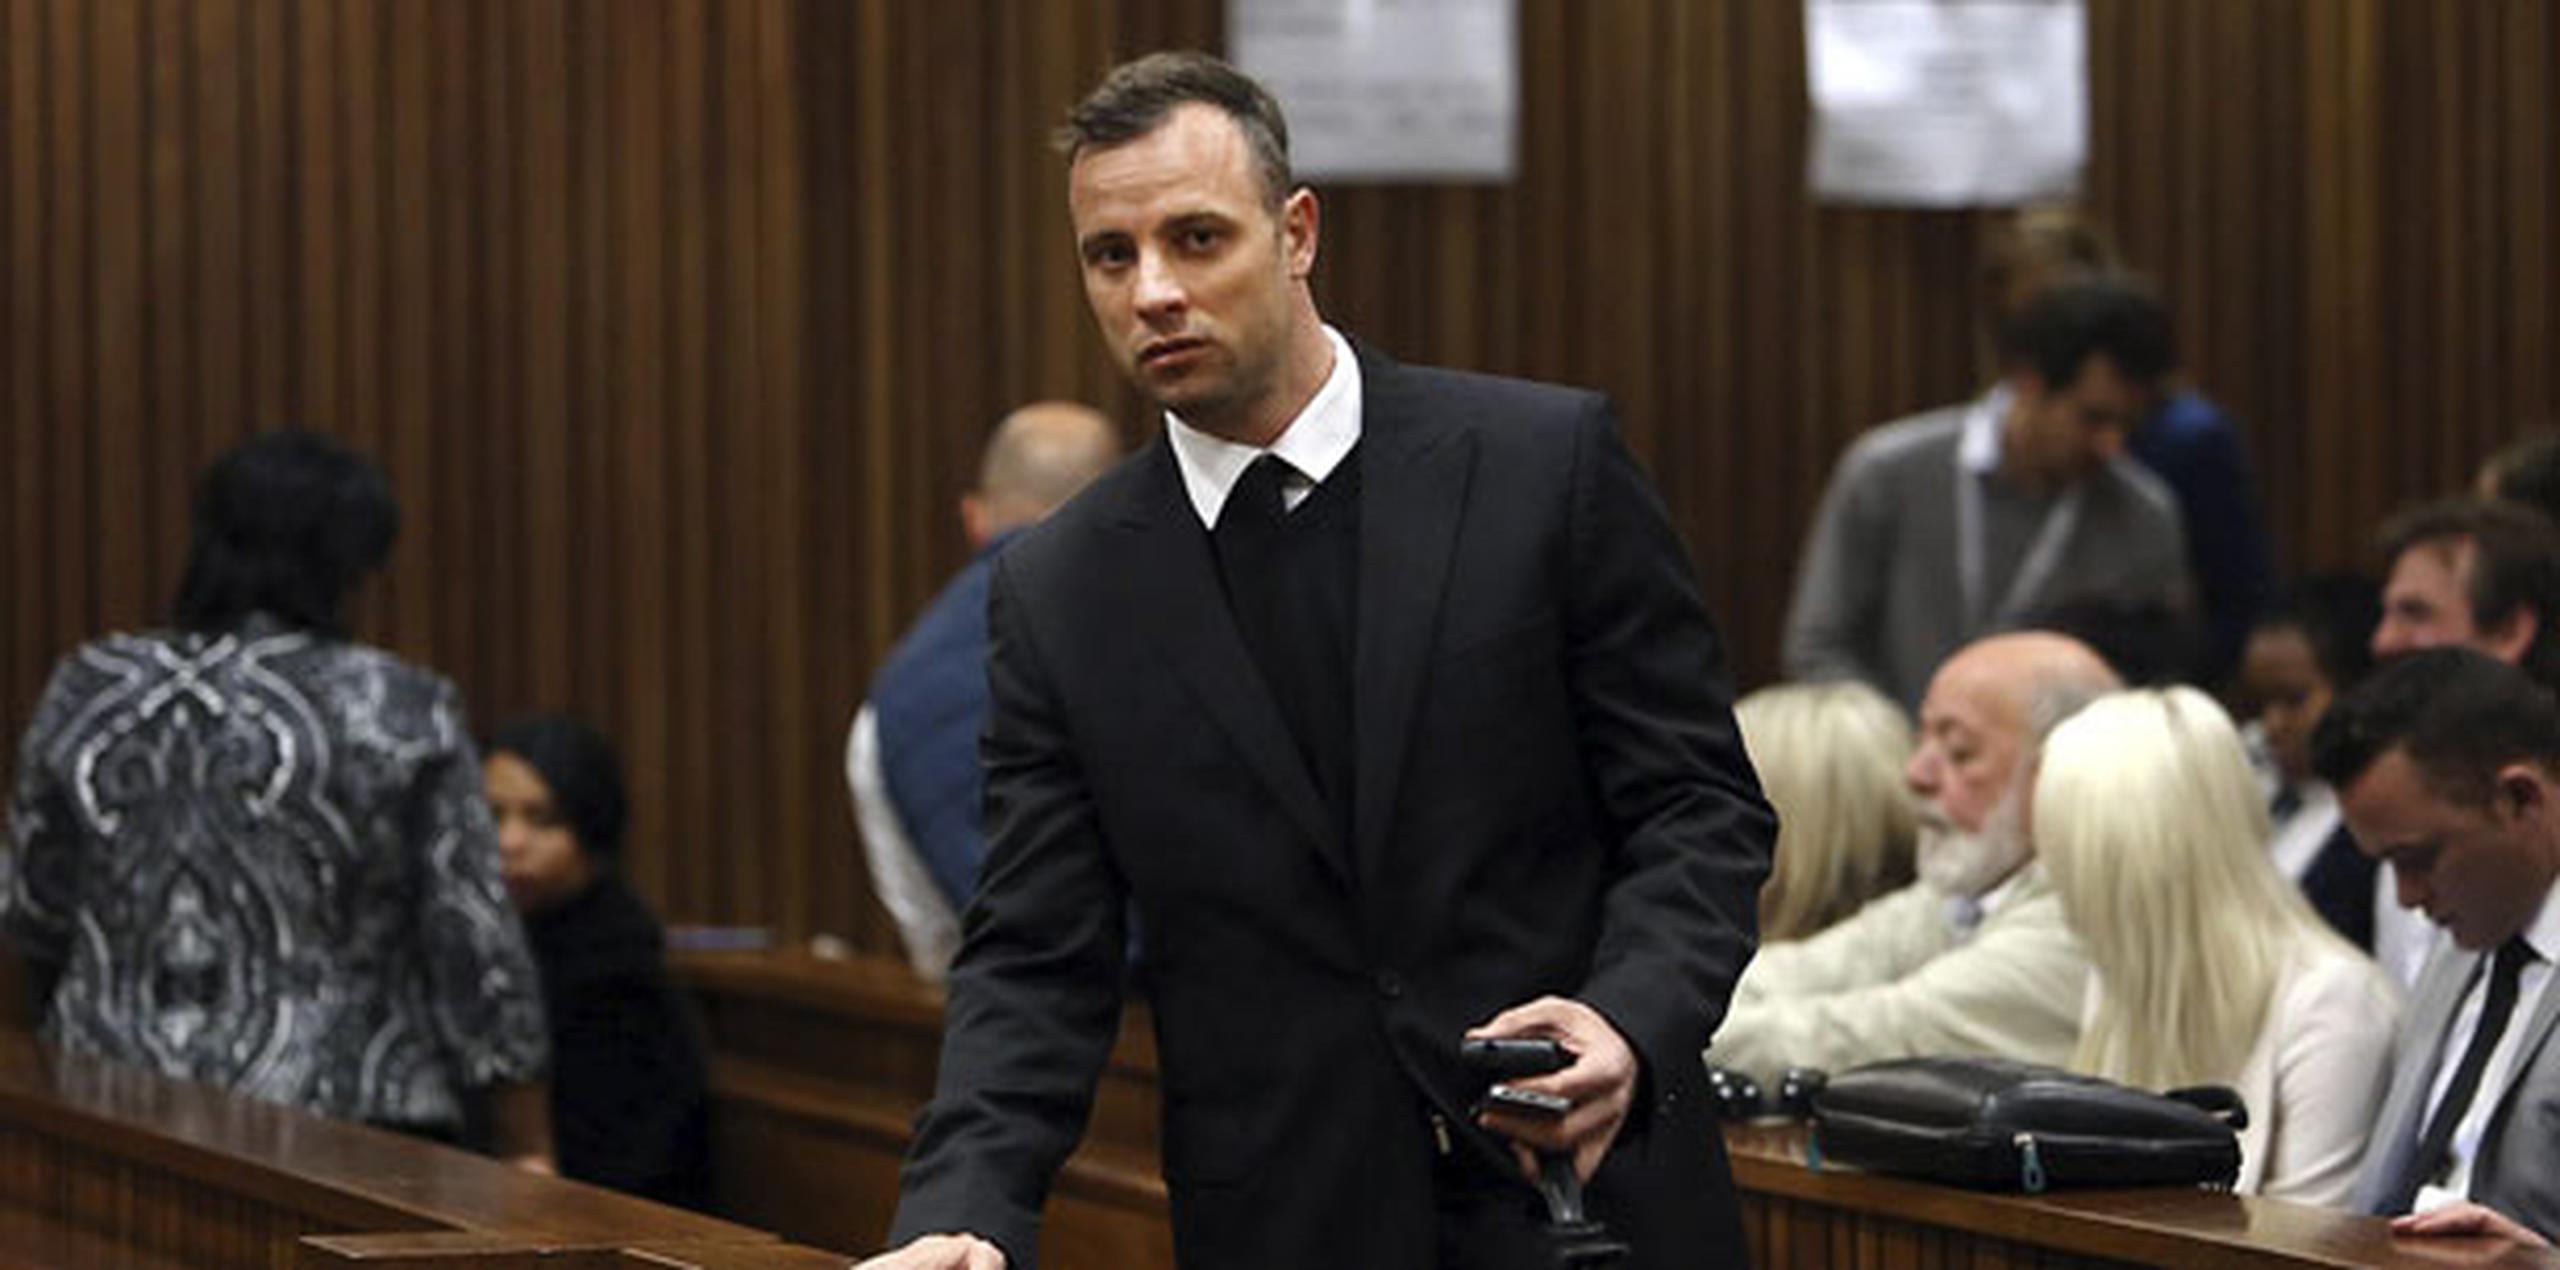 El atleta paralímpico Oscar Pistorius llega al Tribunal Superior de Pretoria para asistir a una nueva jornada de su juicio por asesinato. (Agencia EFE)